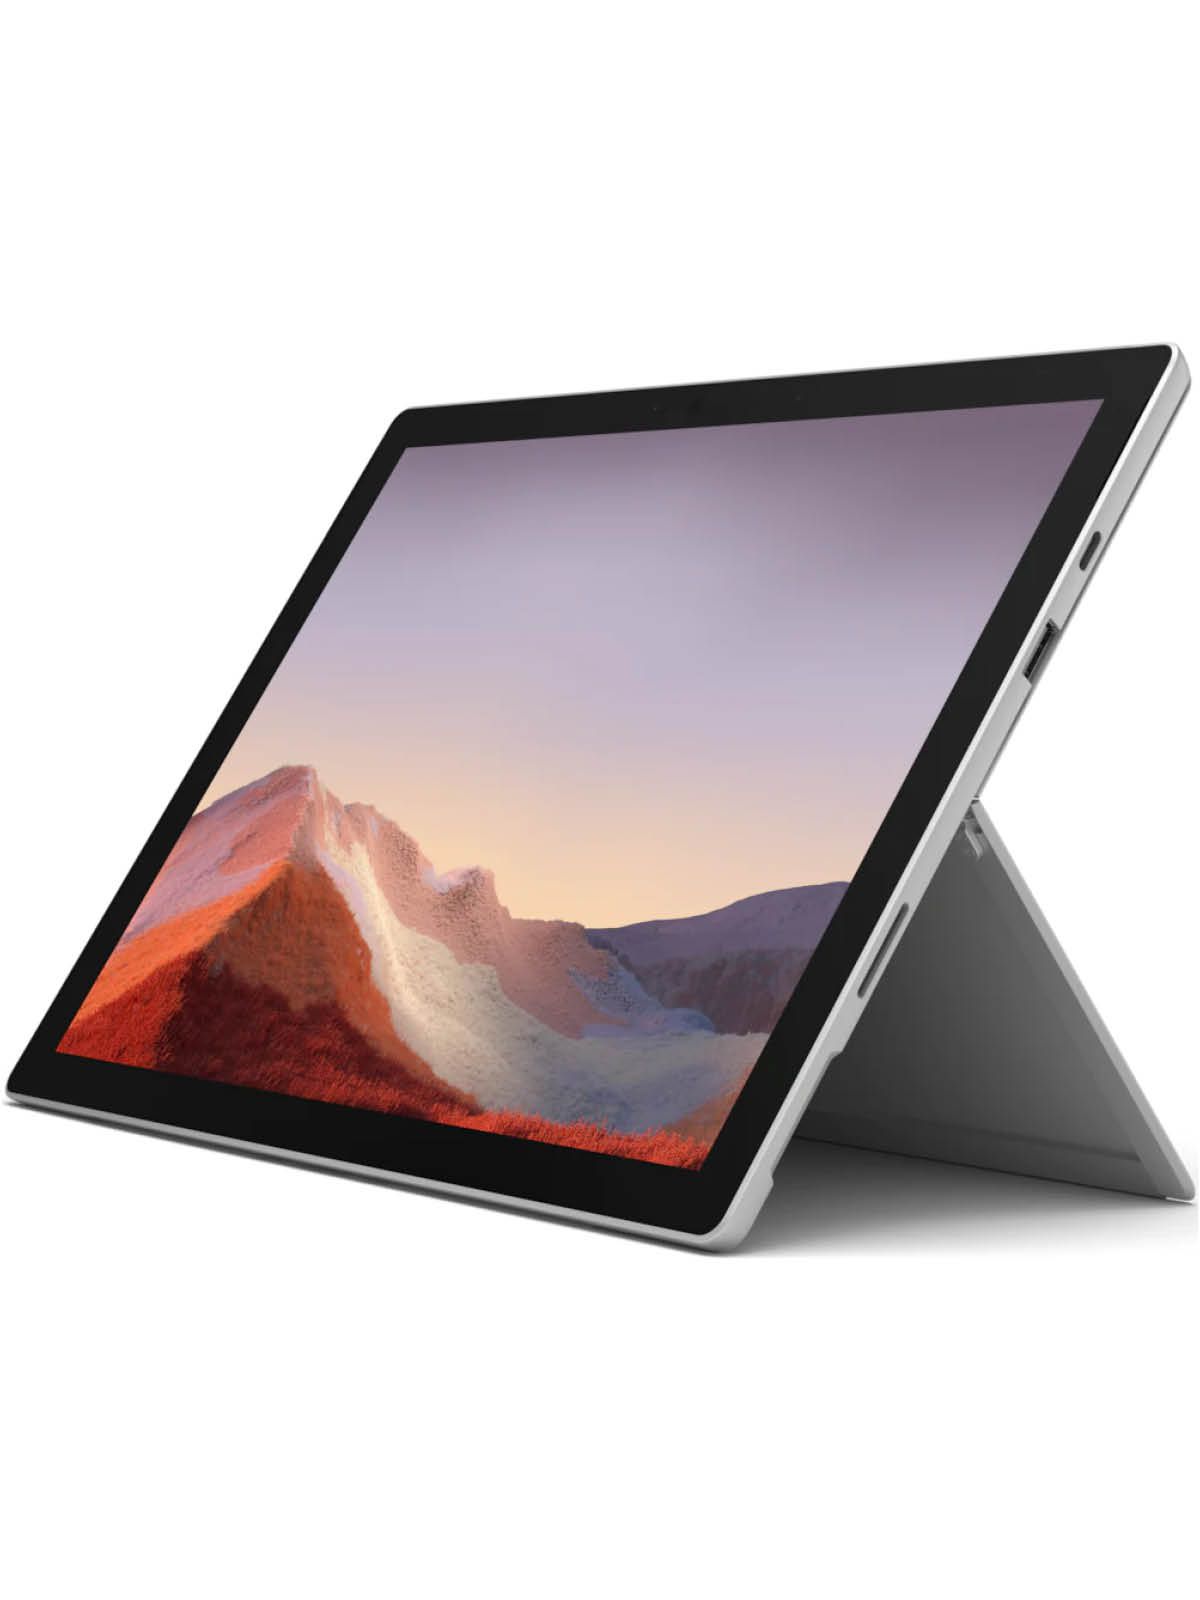 Microsoft Surface Pro 7 Gerätehalter